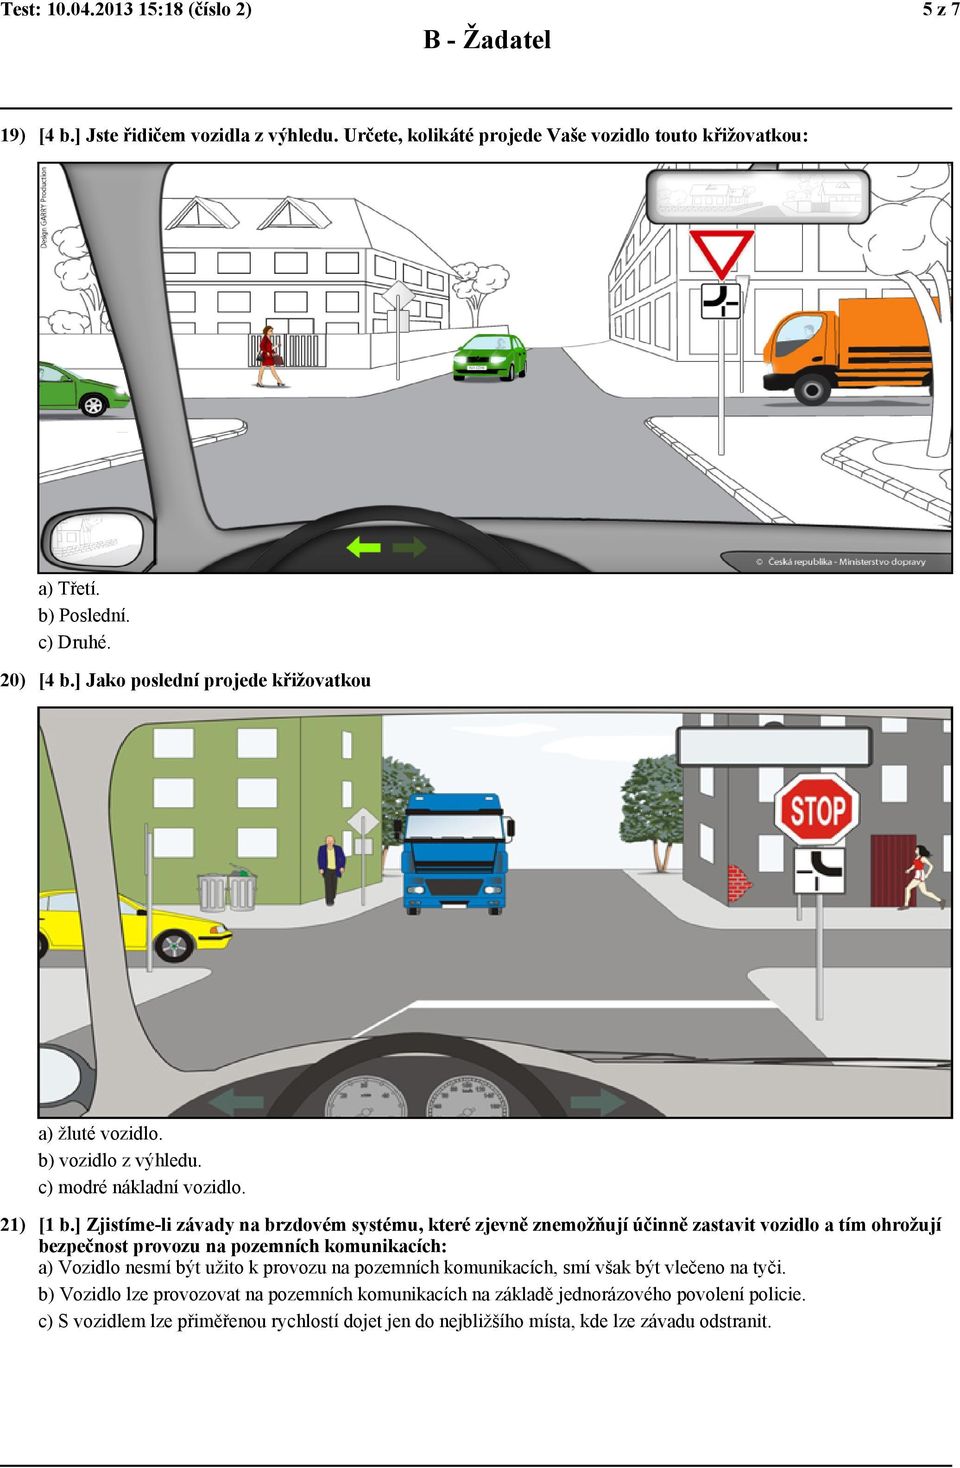 ] Zjistíme-li závady na brzdovém systému, které zjevně znemožňují účinně zastavit vozidlo a tím ohrožují bezpečnost provozu na pozemních komunikacích: a) Vozidlo nesmí být užito k